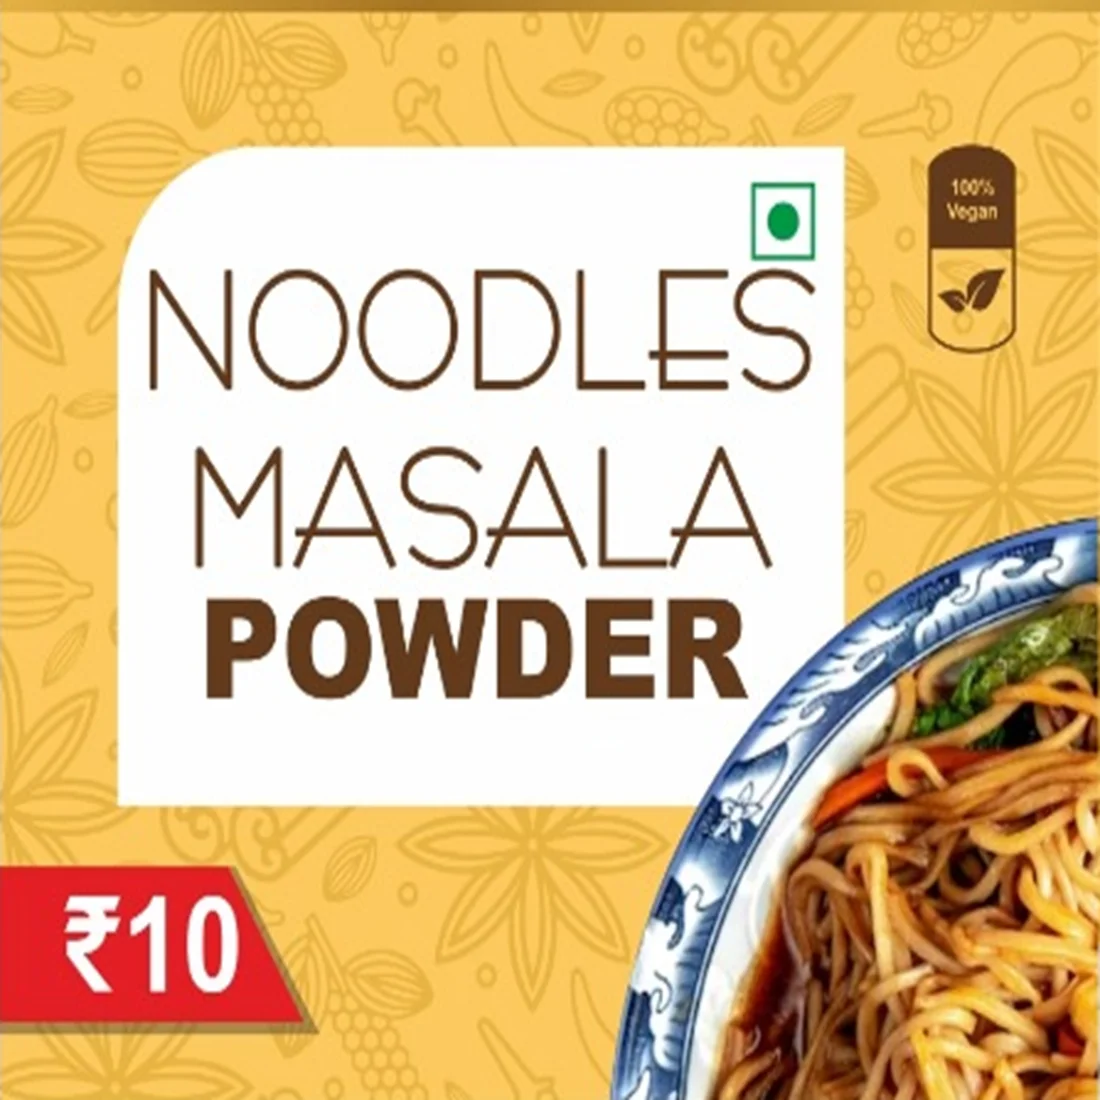 Noodles masala